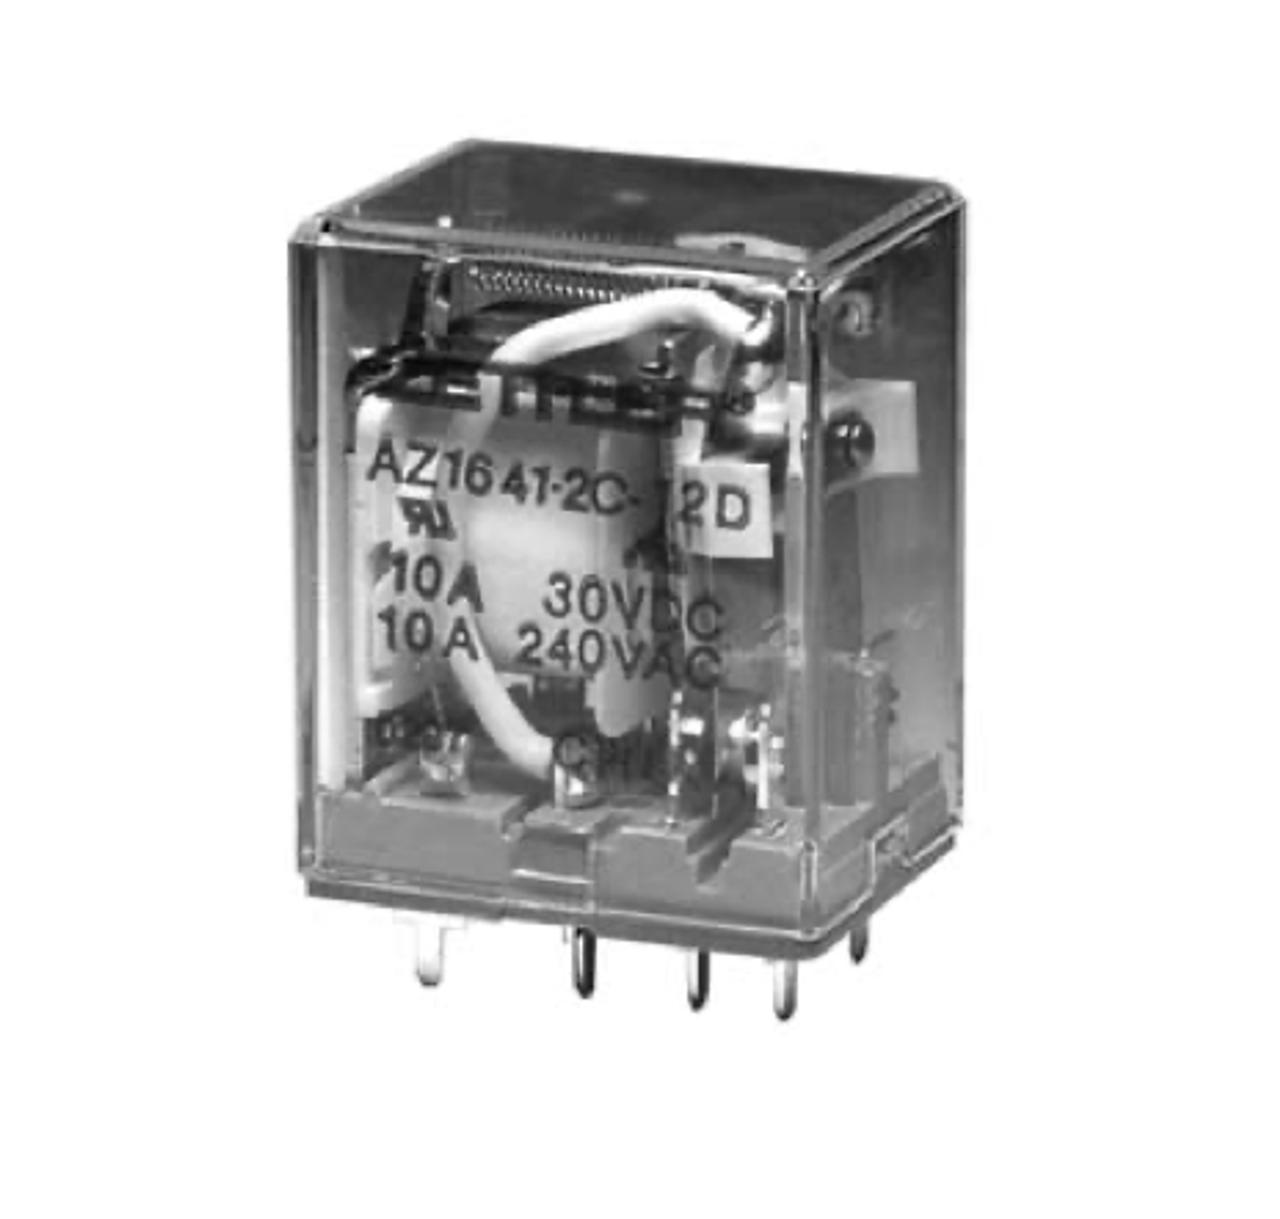 American Zettler AZ1641-1CT-6A Power Relay